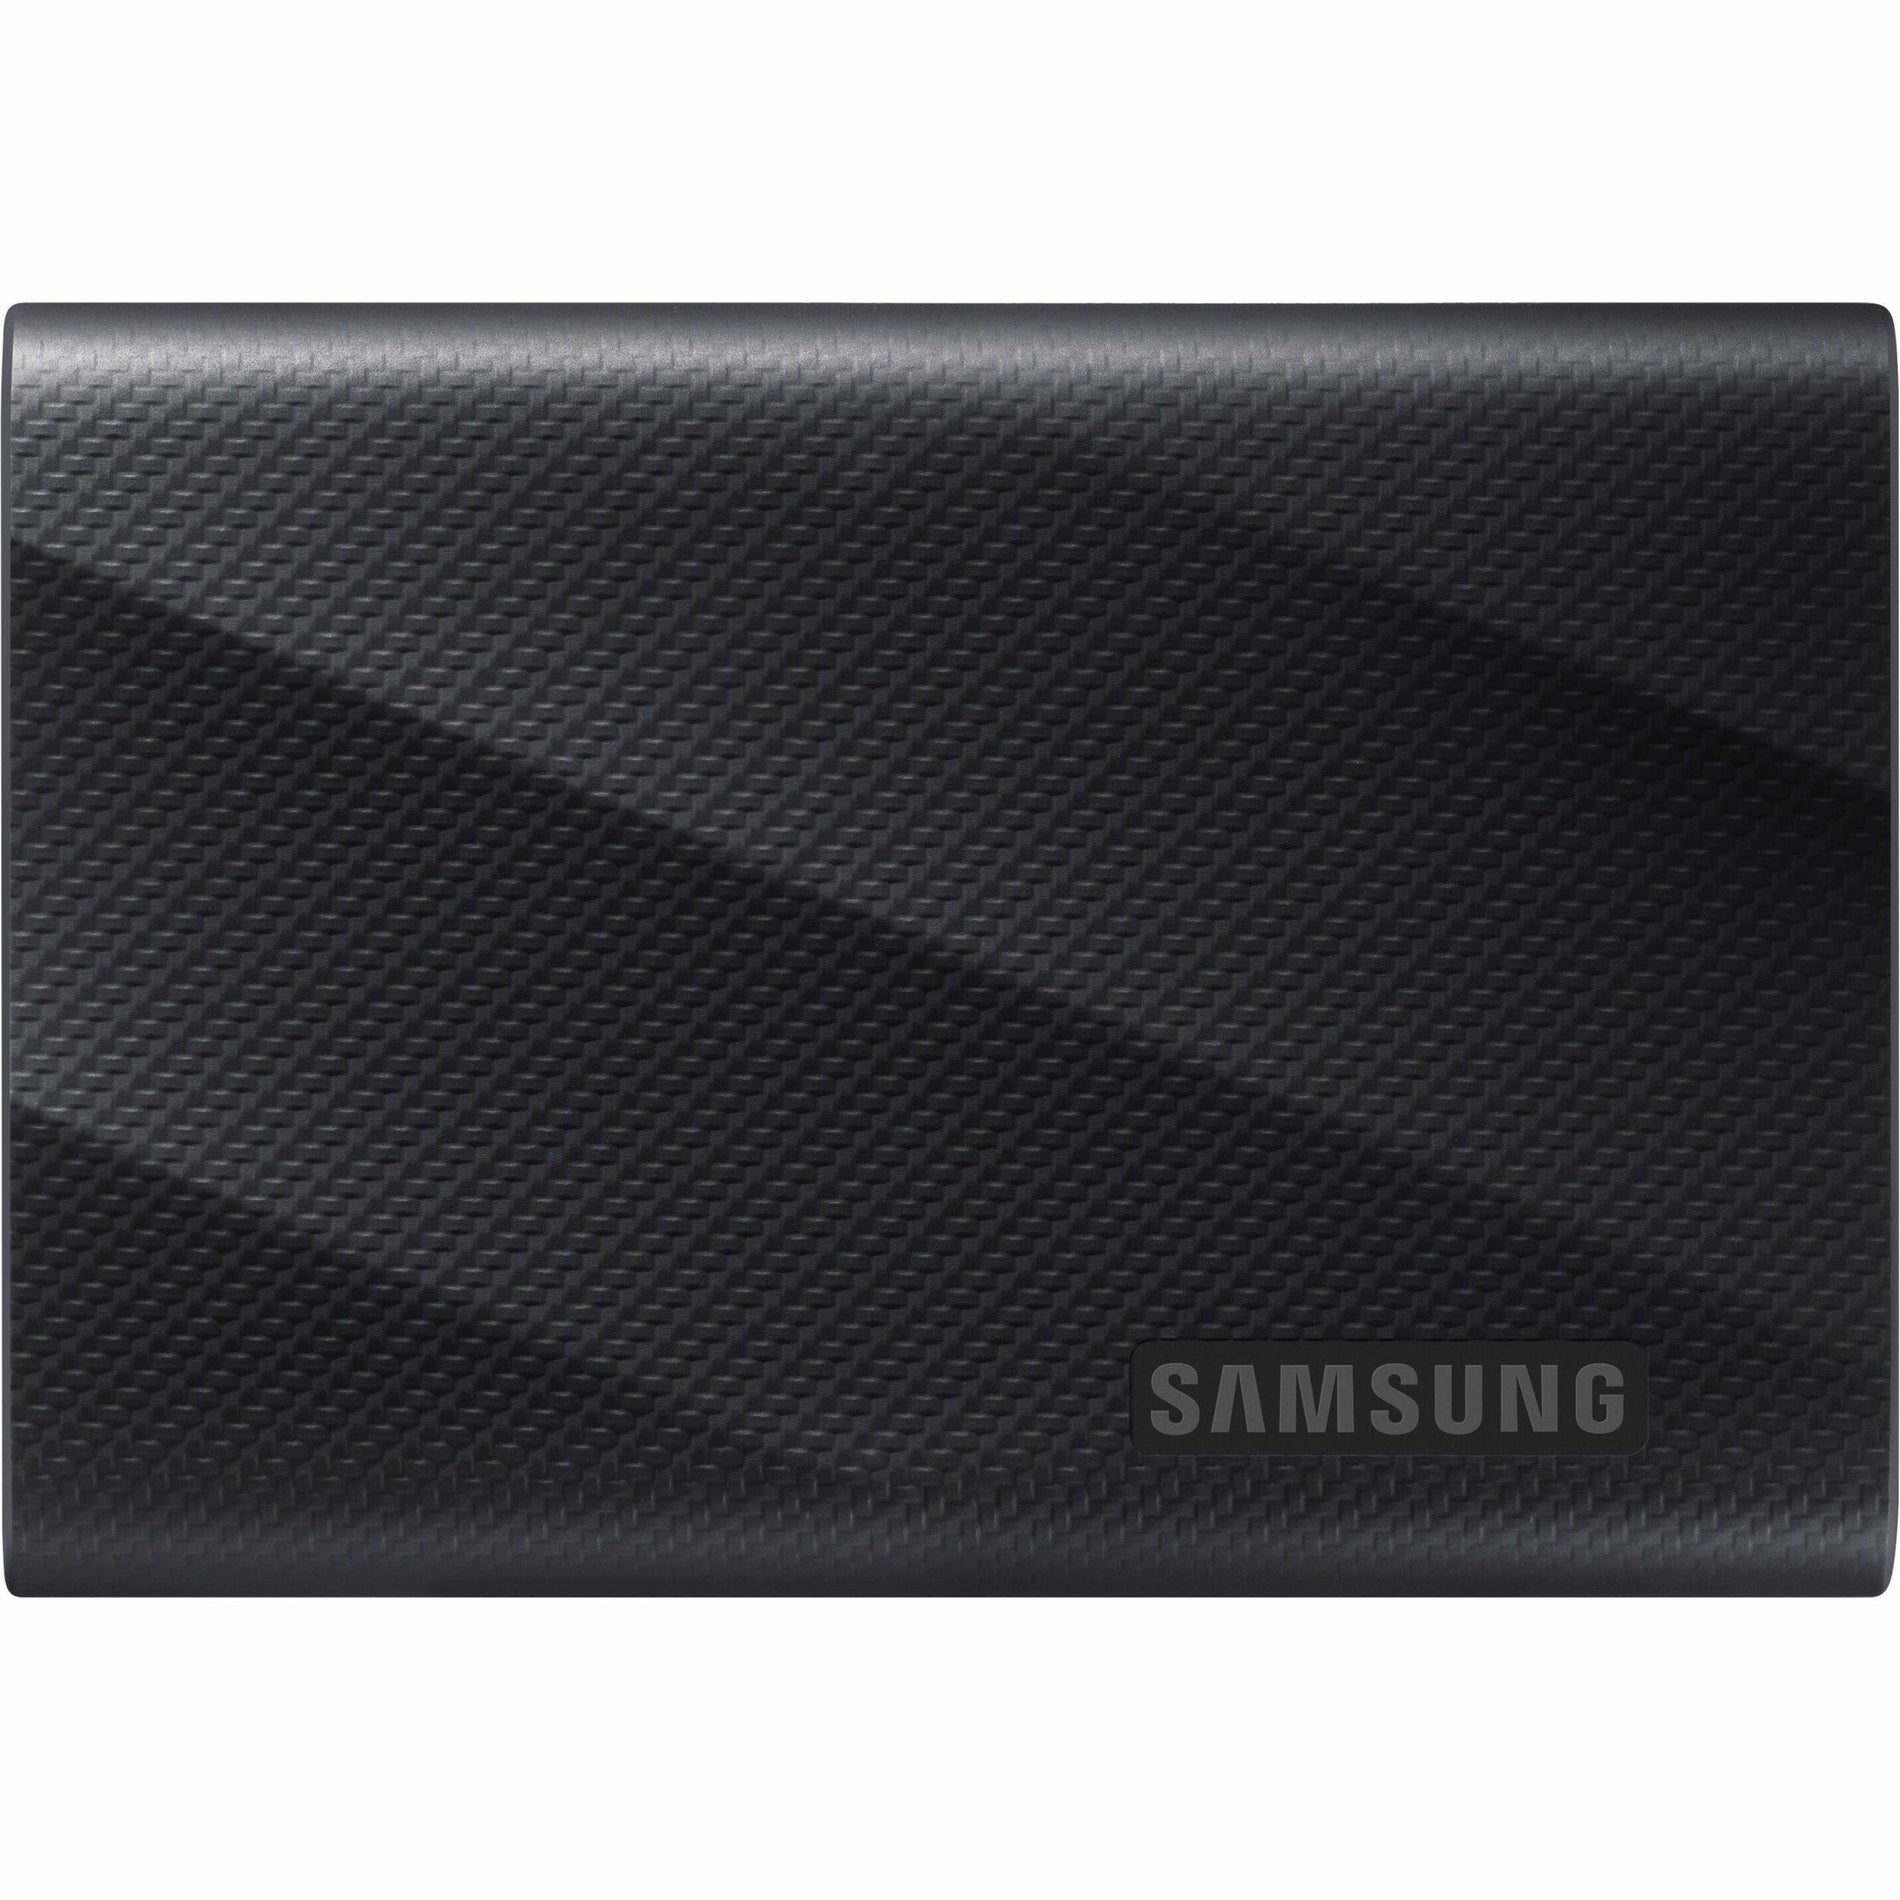 Samsung MU-PG4T0B/AM Portable SSD T9 USB 3.2 Gen2x2 4TB (Black) 5-Year Warranty 2000 MB/s Transfer Rate